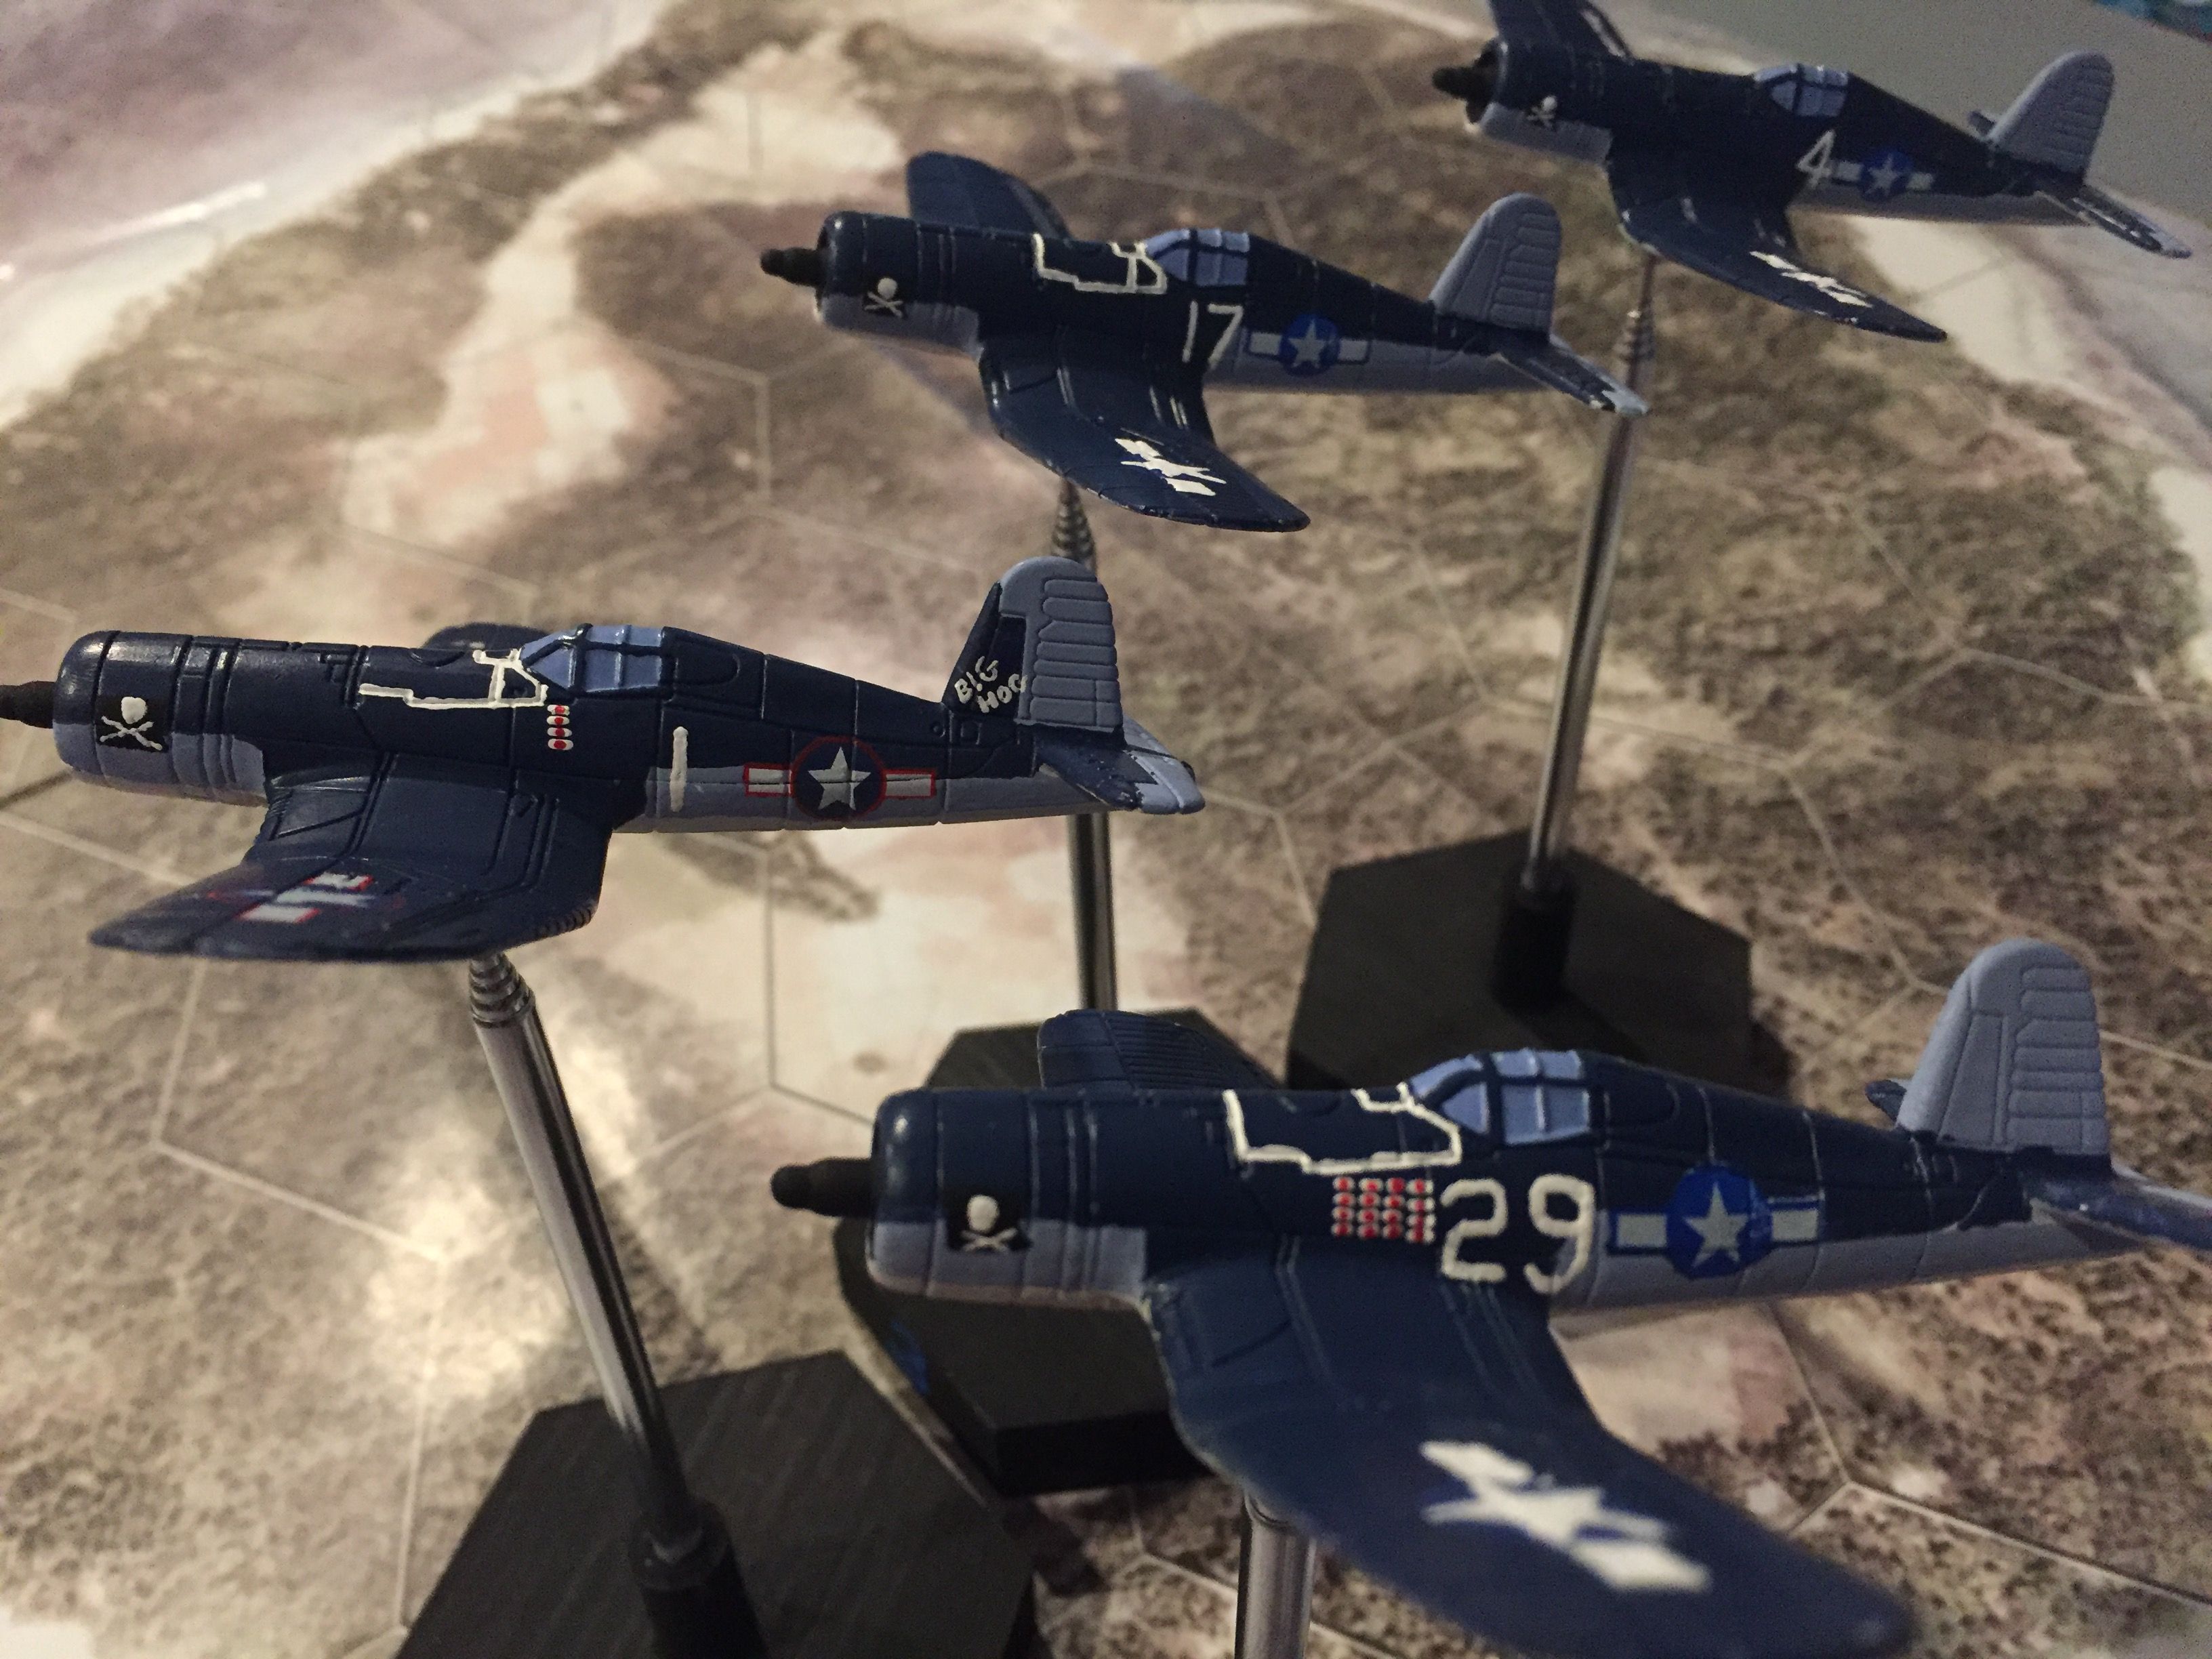 VF17 Corsairs